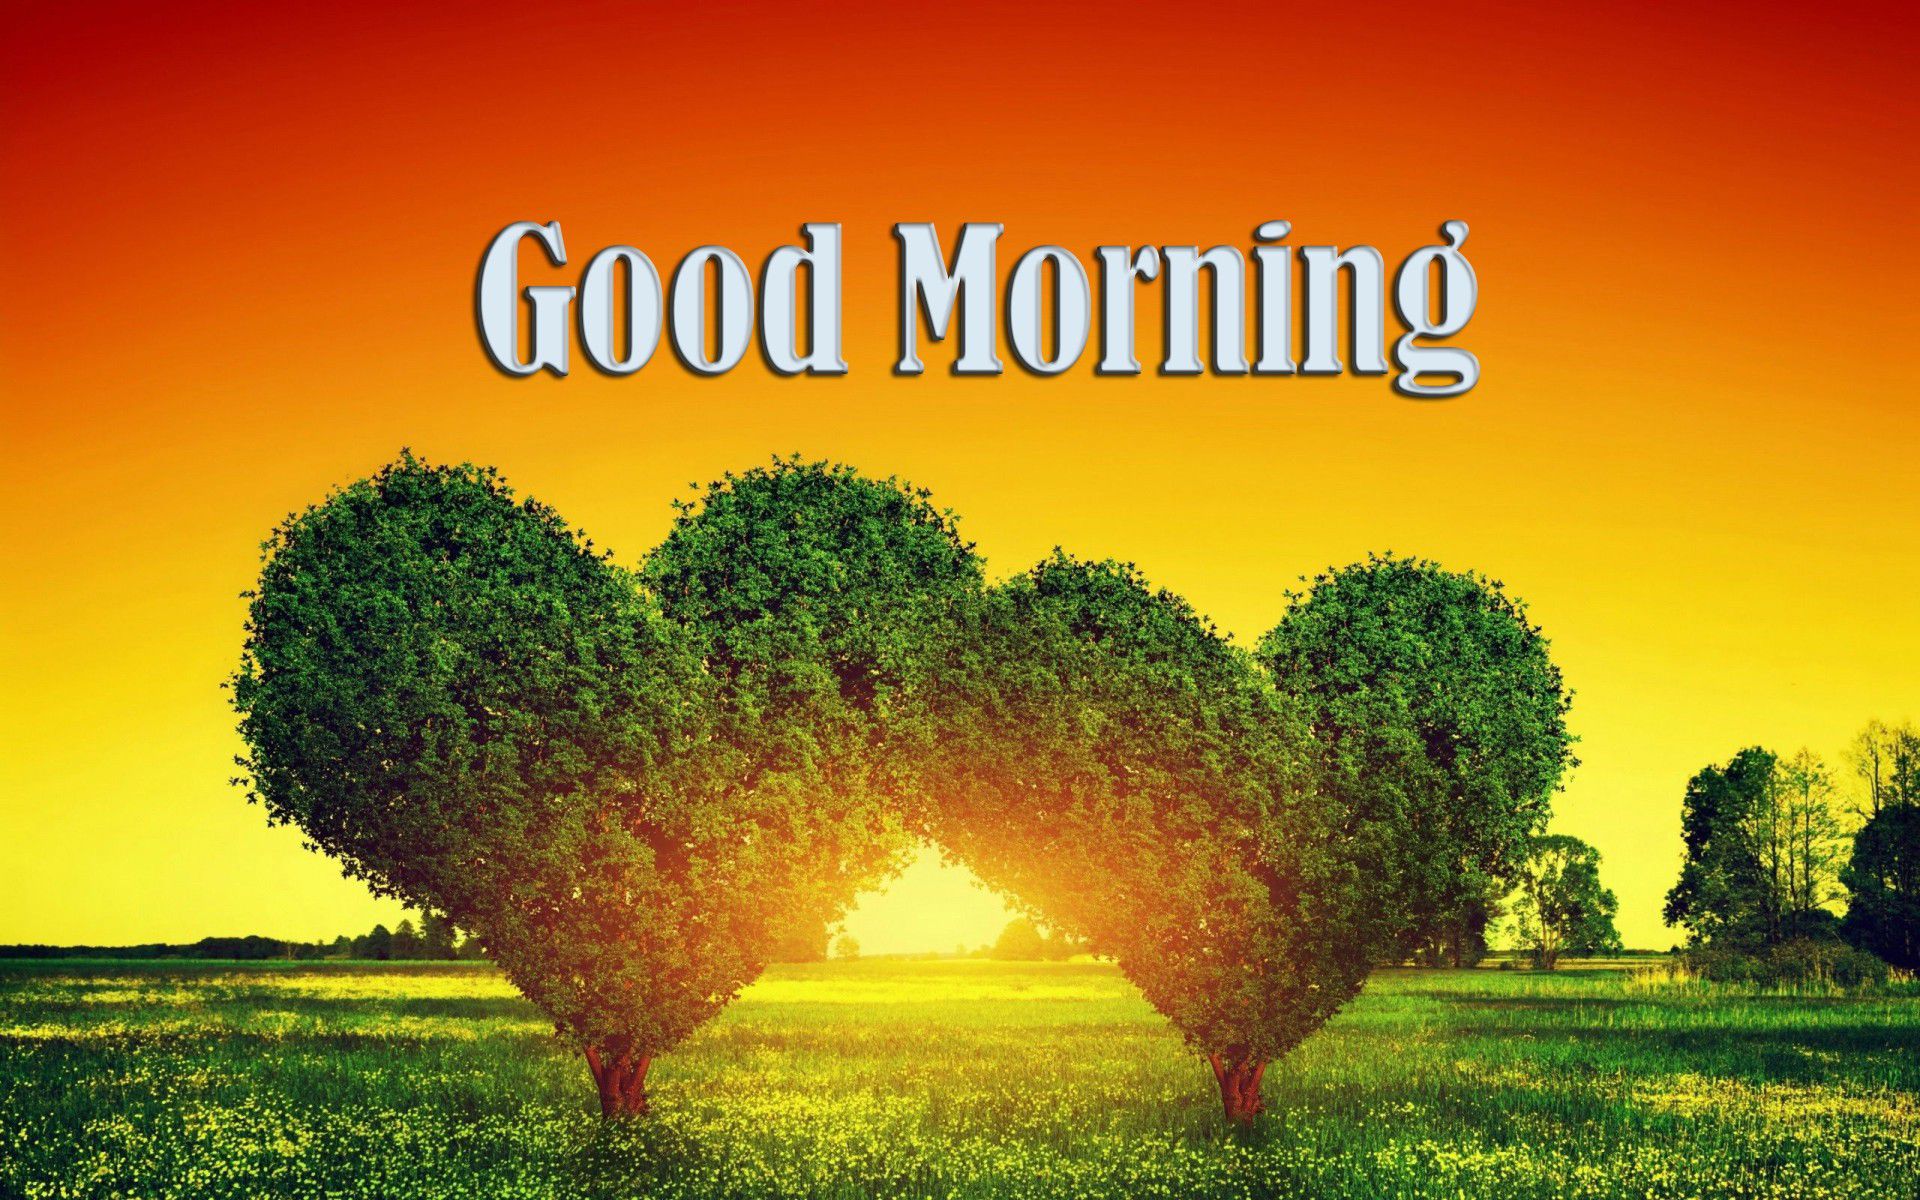 좋은 아침 벽지 무료 다운로드,자연 경관,자연,잔디,나무,아침